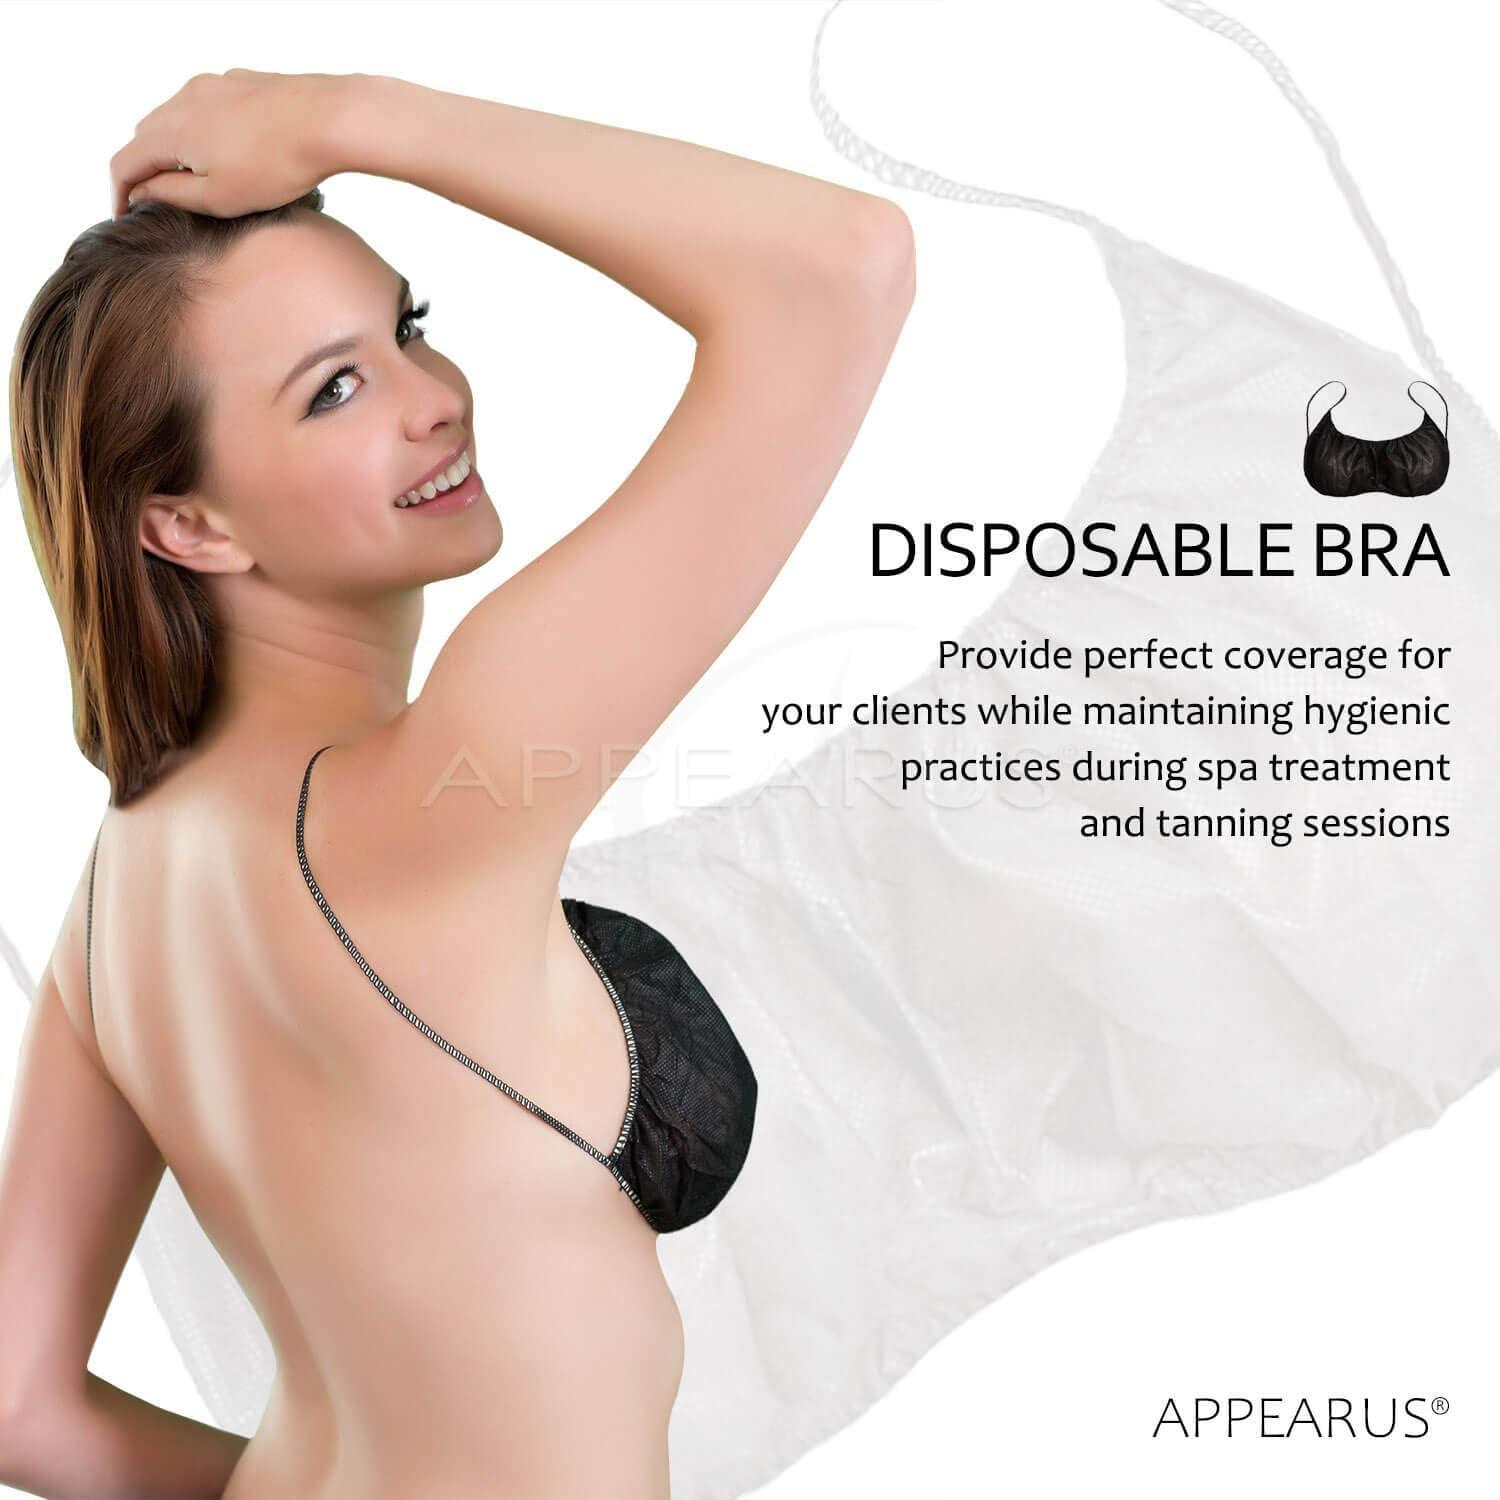 disposable bra for spray tan, disposable